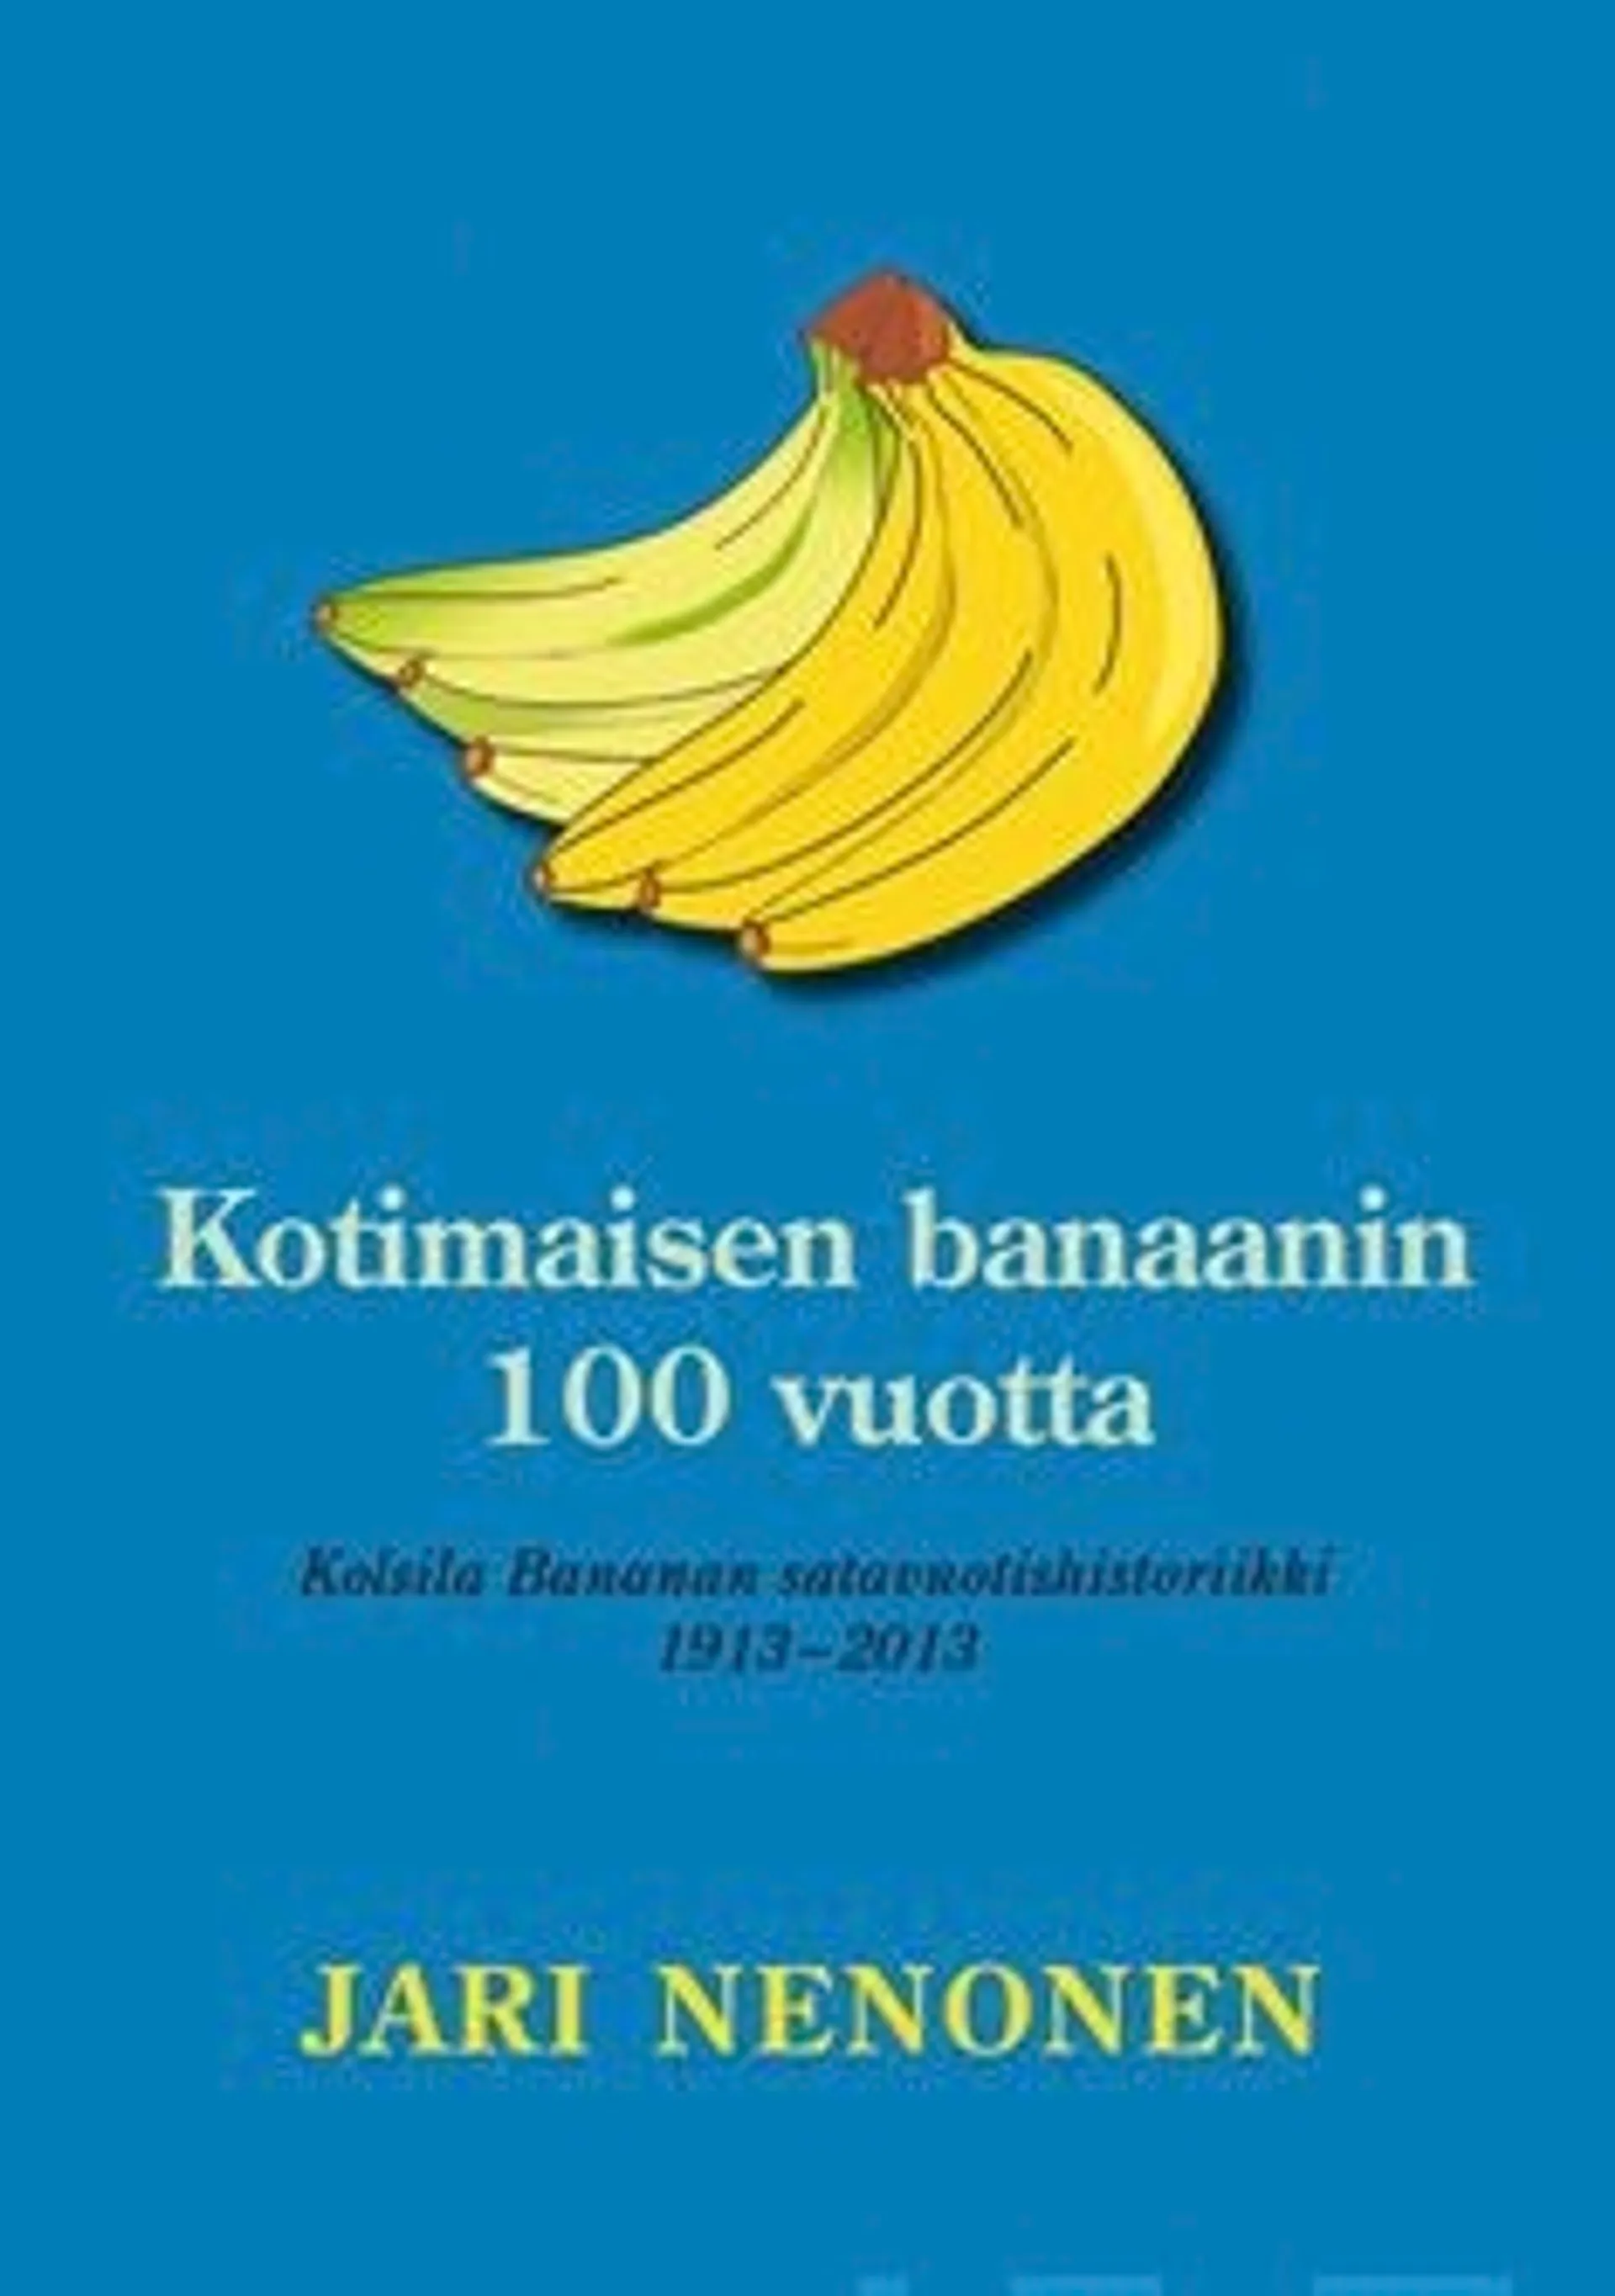 Nenonen, Kotimaisen banaanin 100 vuotta